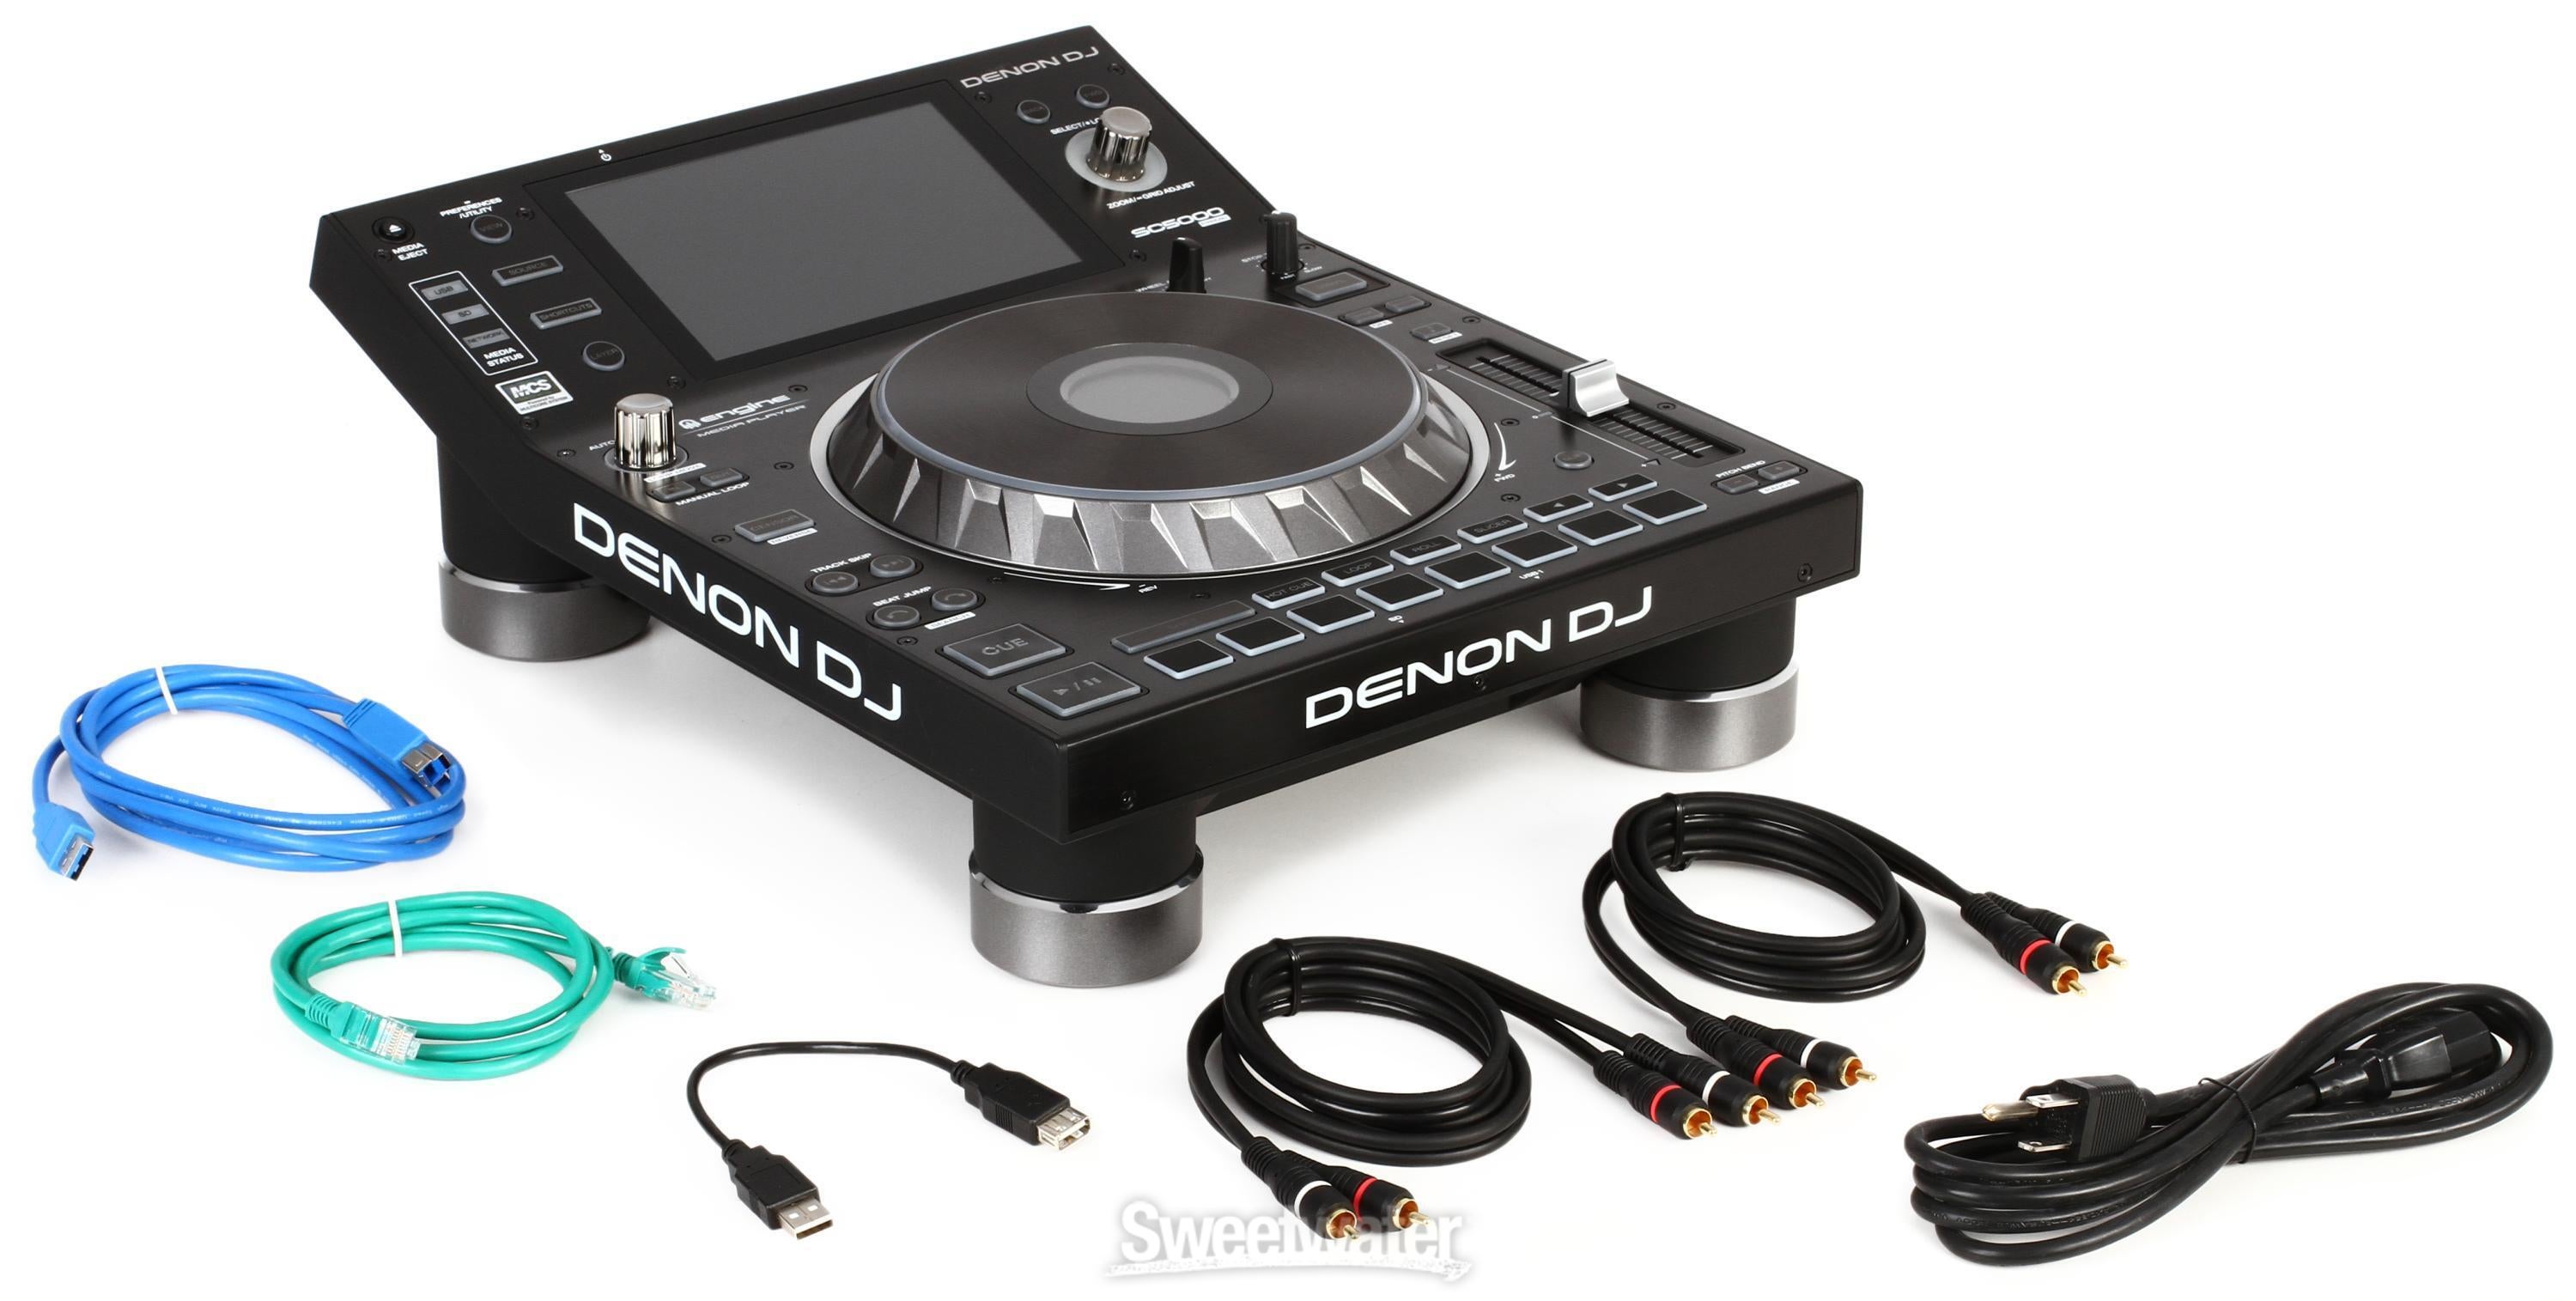 Denon DJ SC5000 Prime Professional Digital DJ Media Player 